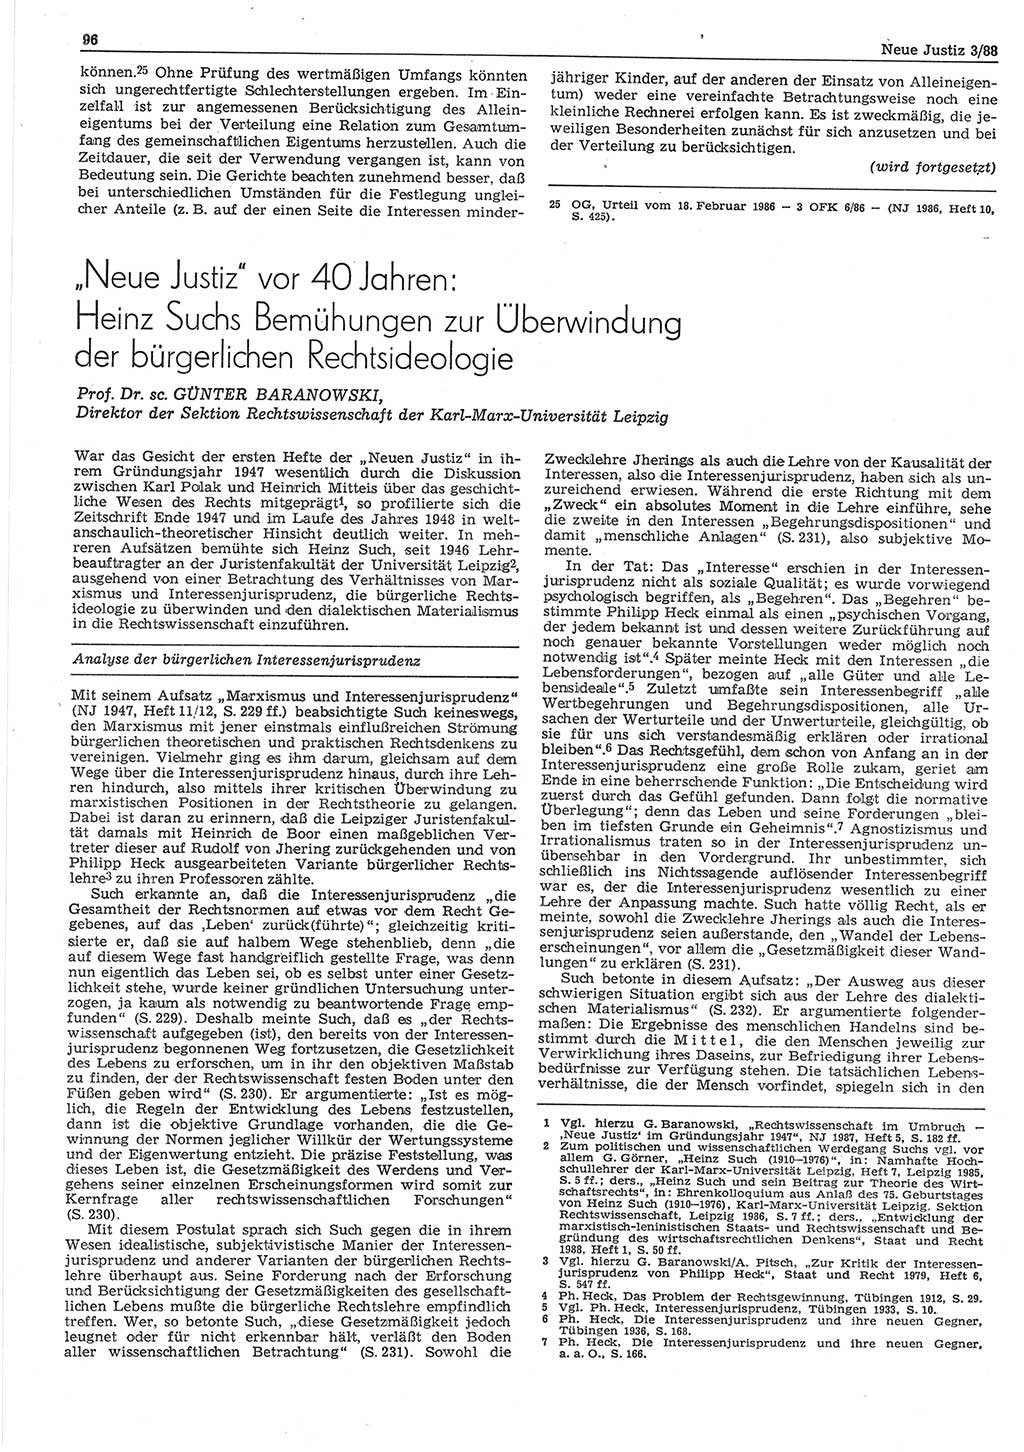 Neue Justiz (NJ), Zeitschrift für sozialistisches Recht und Gesetzlichkeit [Deutsche Demokratische Republik (DDR)], 42. Jahrgang 1988, Seite 96 (NJ DDR 1988, S. 96)